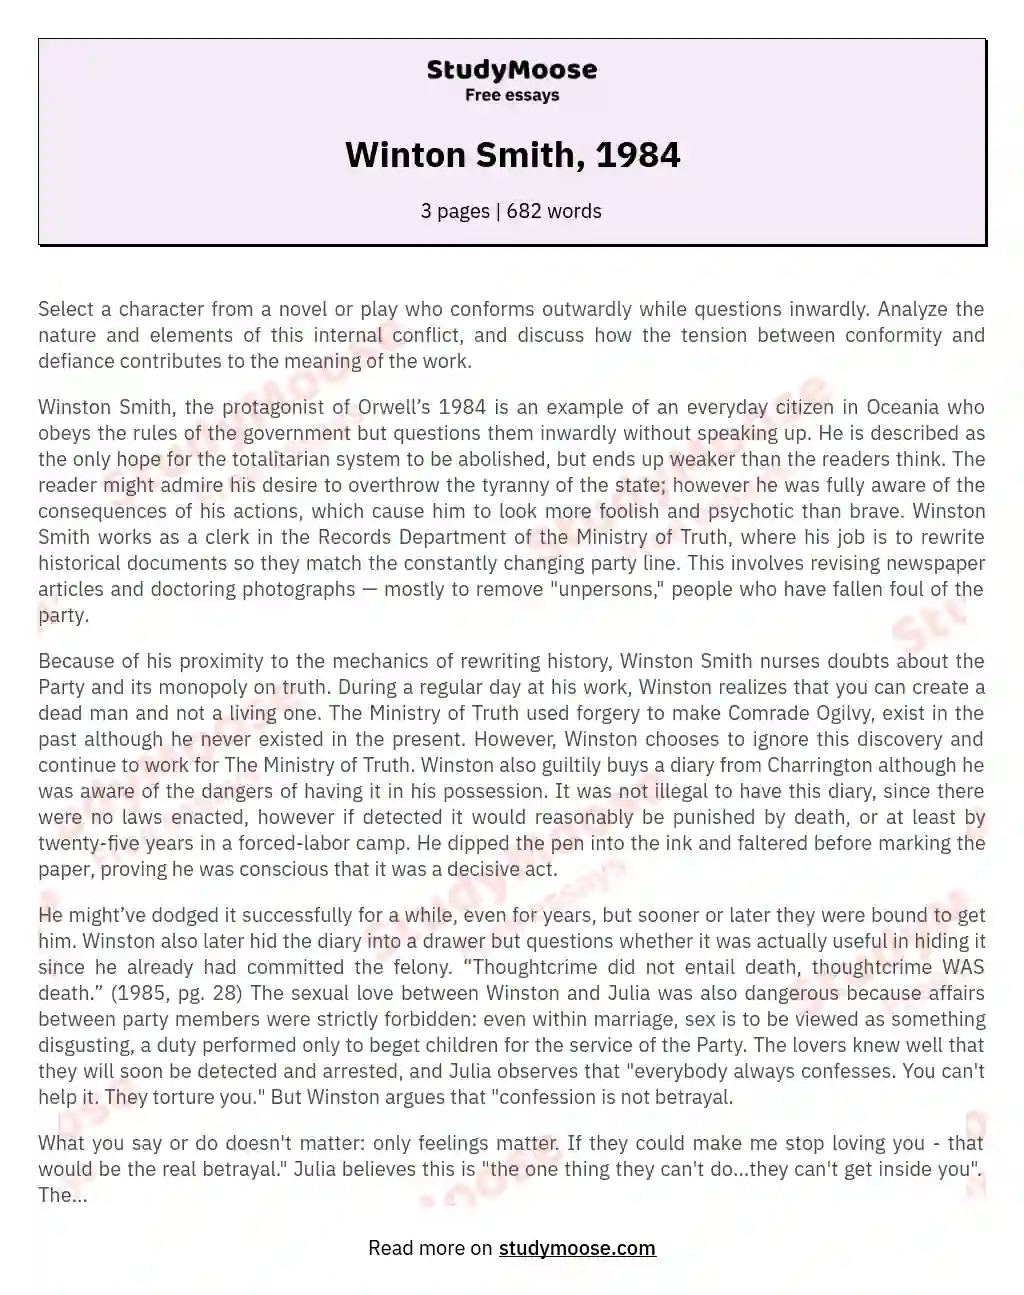 Winton Smith, 1984 essay